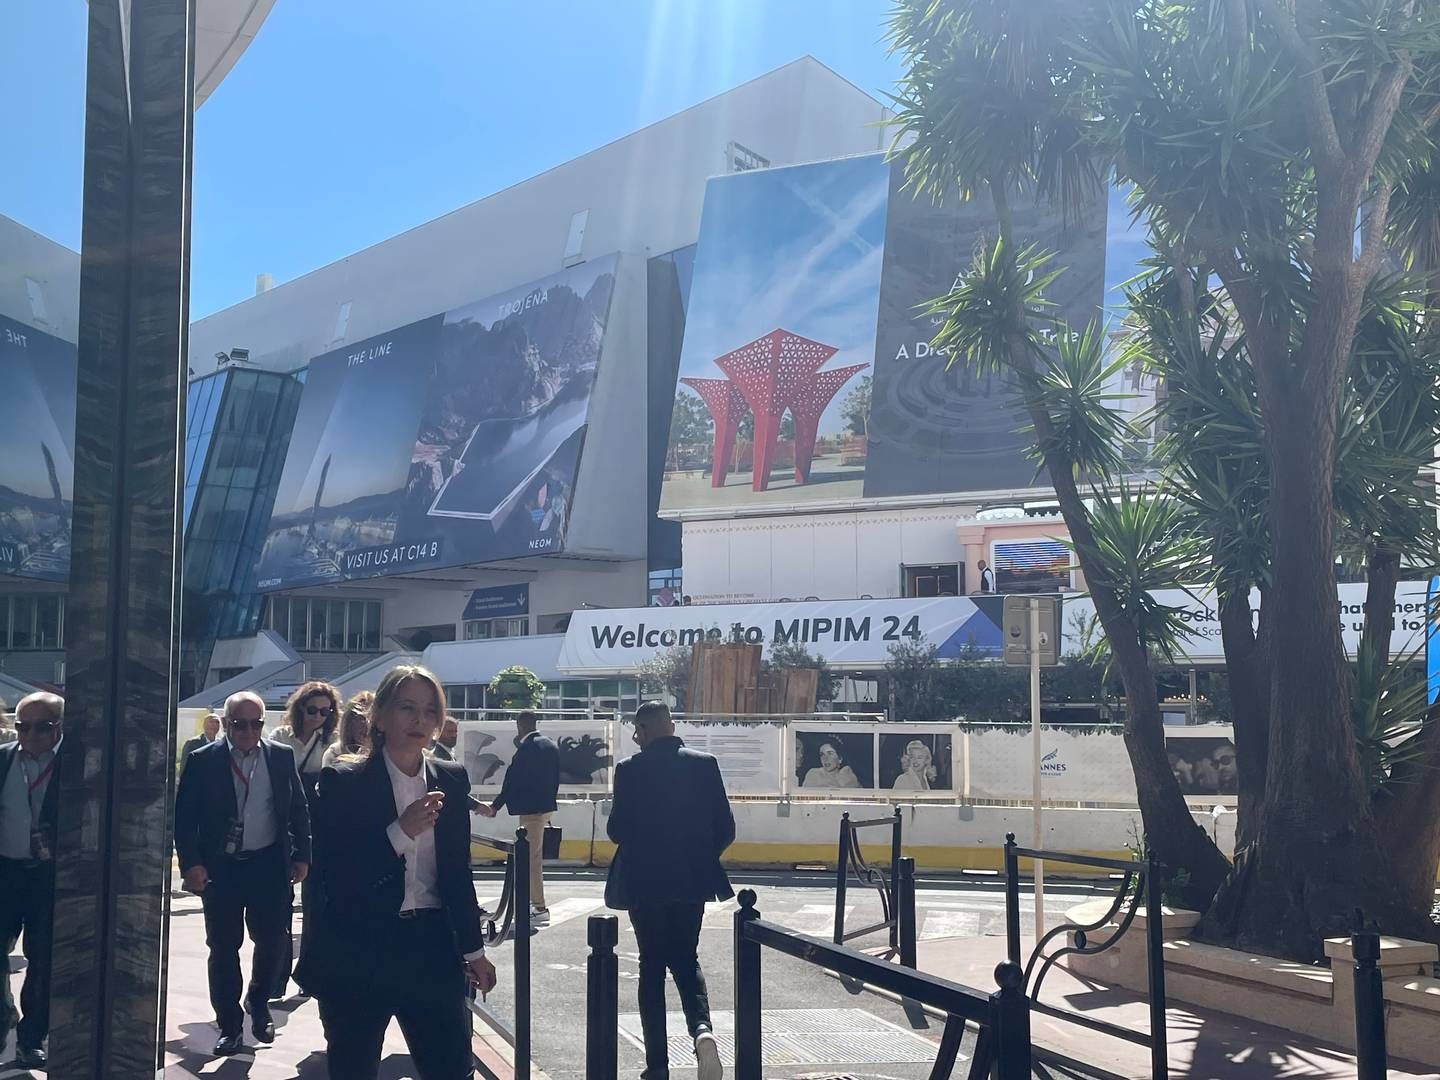 Der var brug for SPF i Cannes i løbet af sidste uge, hvor Mipim-messen, verdens største ejendomsmesse, løb af stablen. Der er dog stadig ikke fuld sol over ejendomsmarkedet, lød det fra brancheaktørerne. | Foto: Ida Kramhøft Jensen